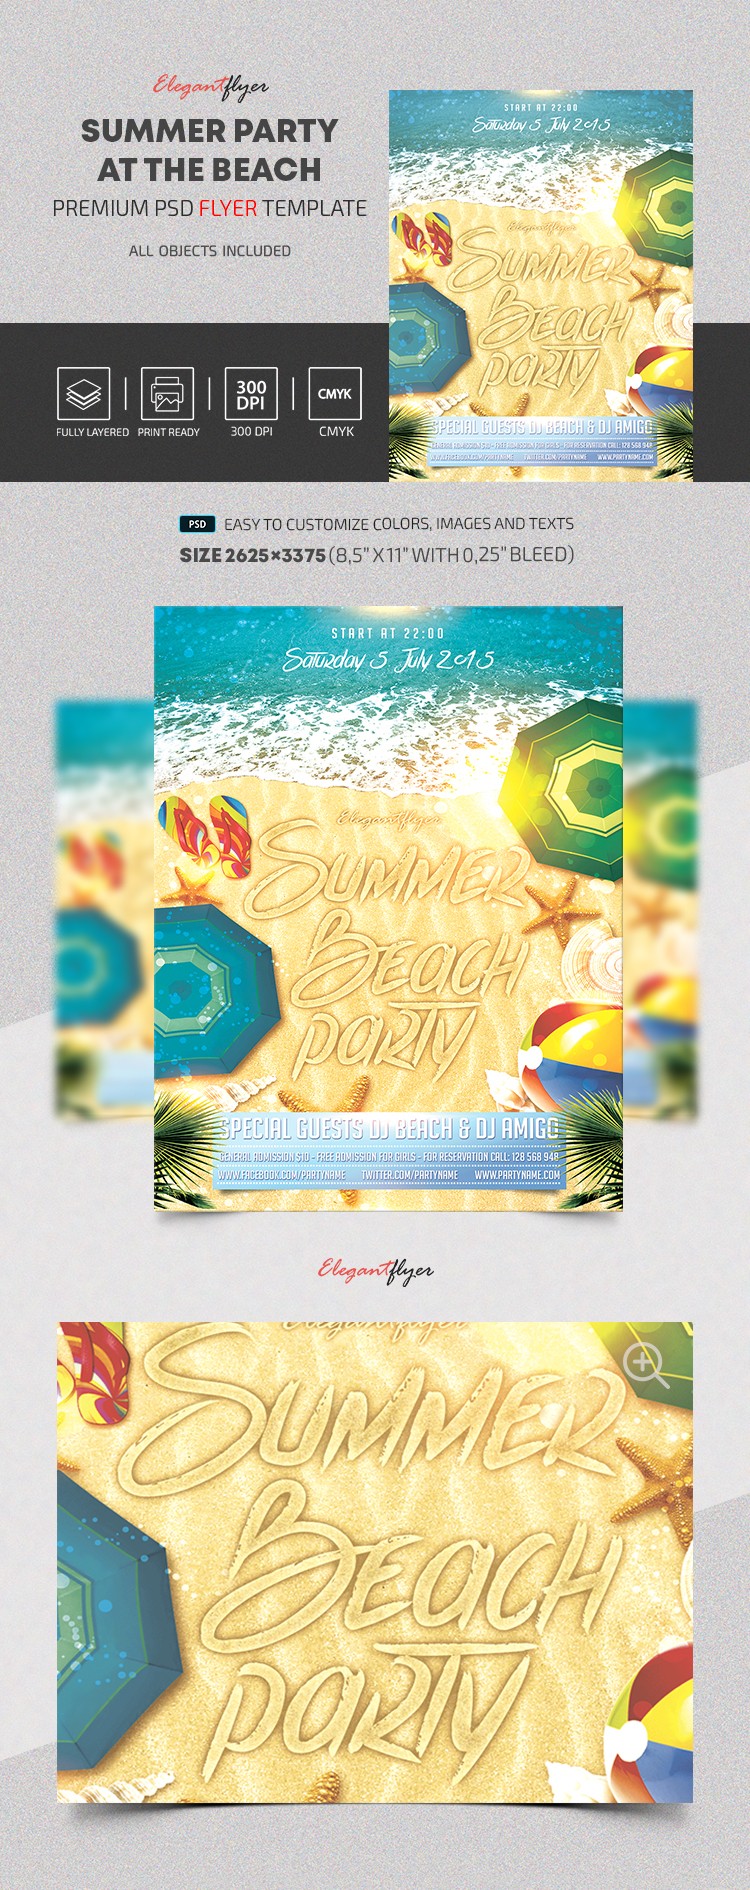 Fiesta de verano en la playa V3 by ElegantFlyer